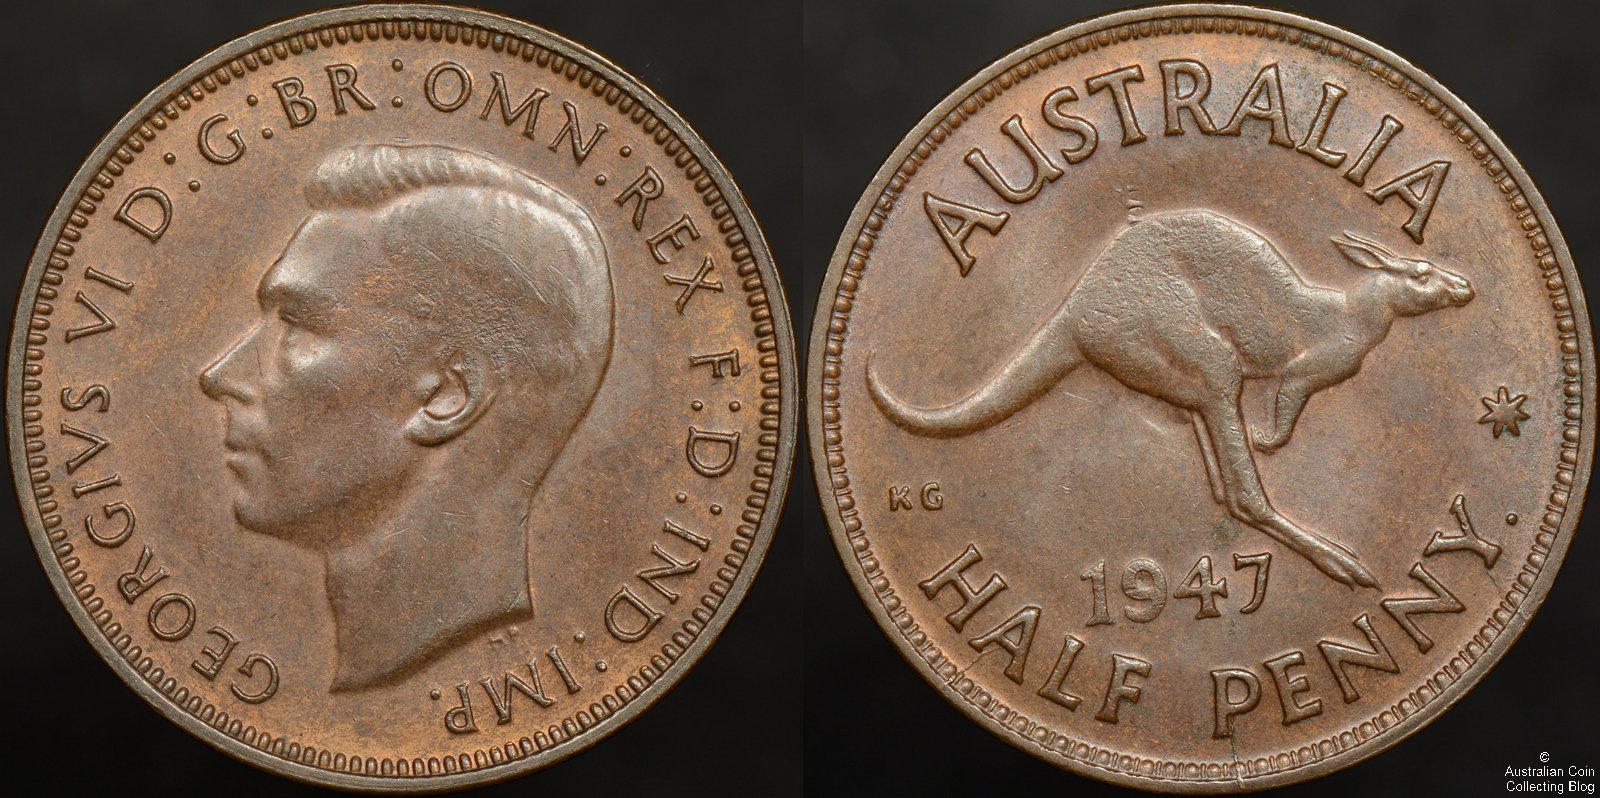 Australia 1947 Half Penny – Denticle Pattern on Kangaroo Back